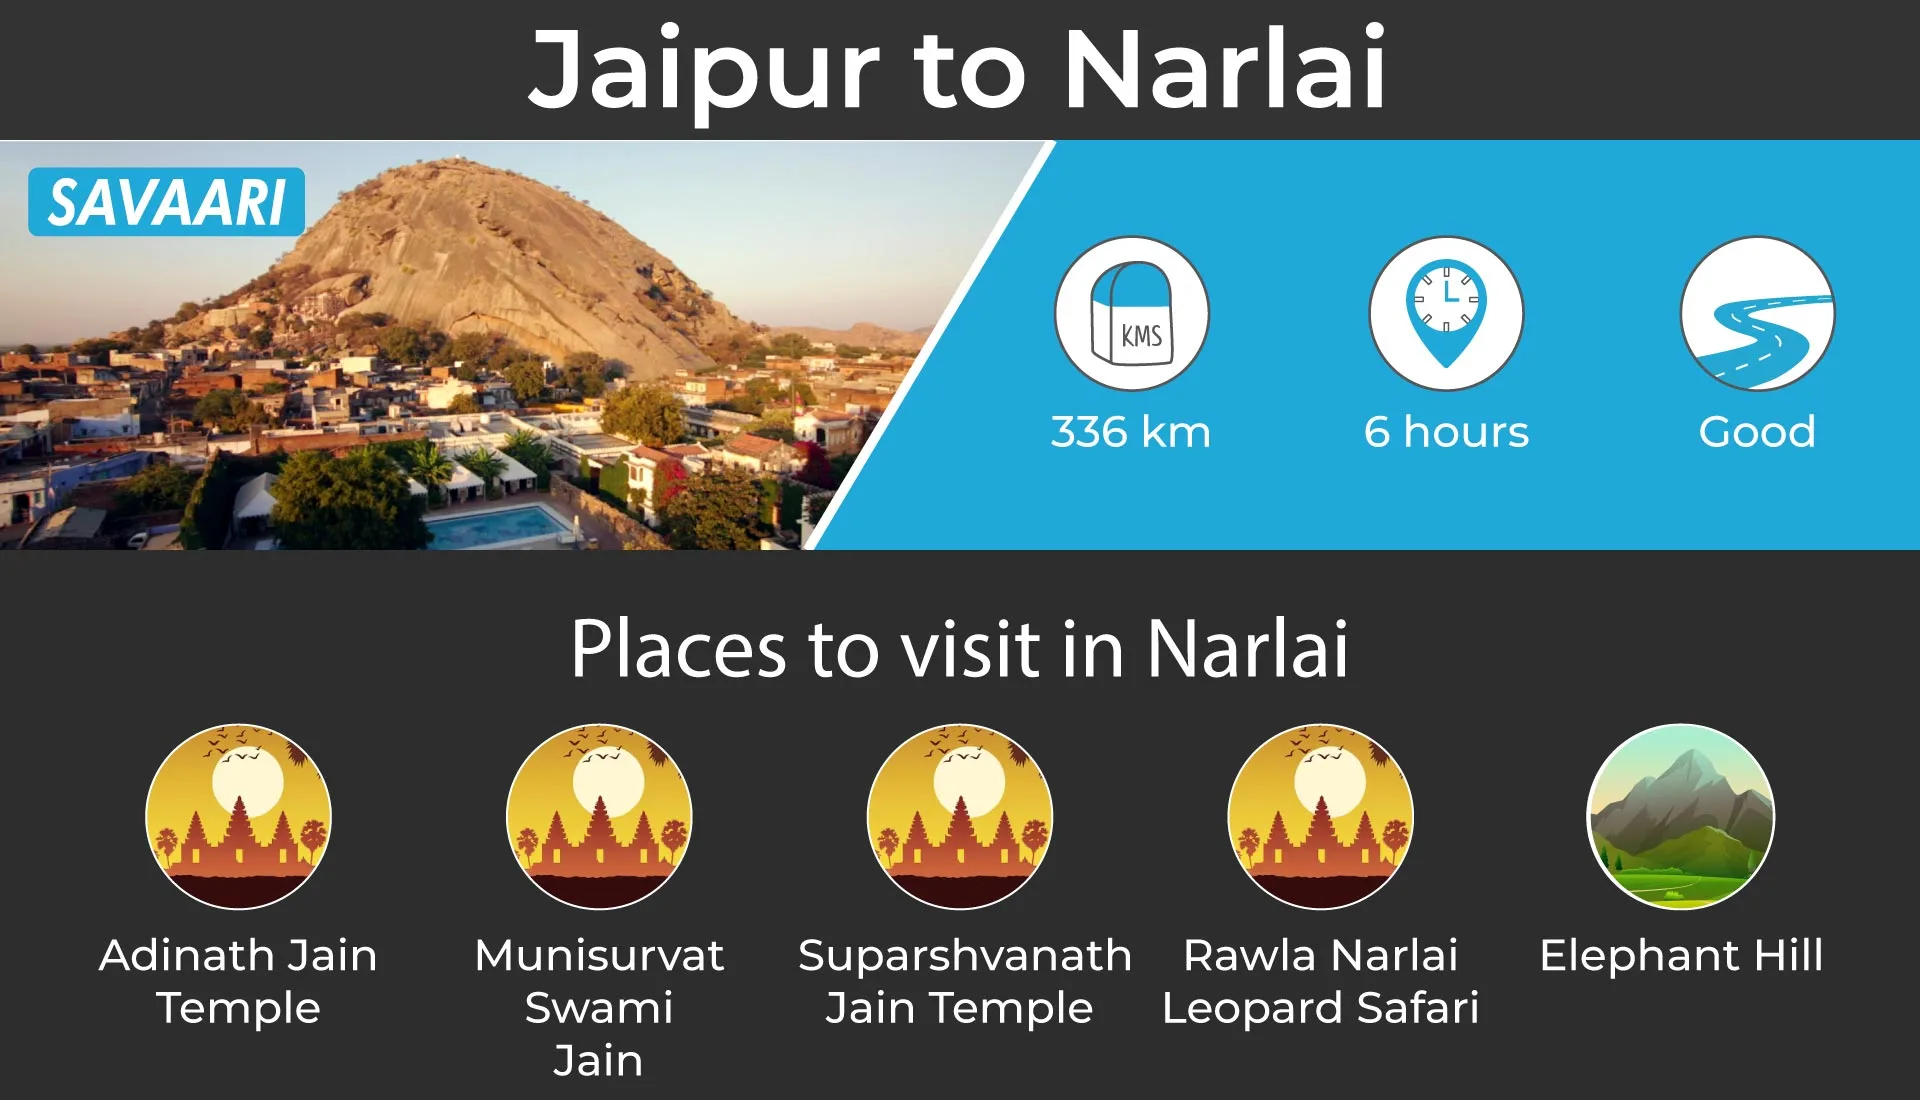 Jaipur to Narlai by car